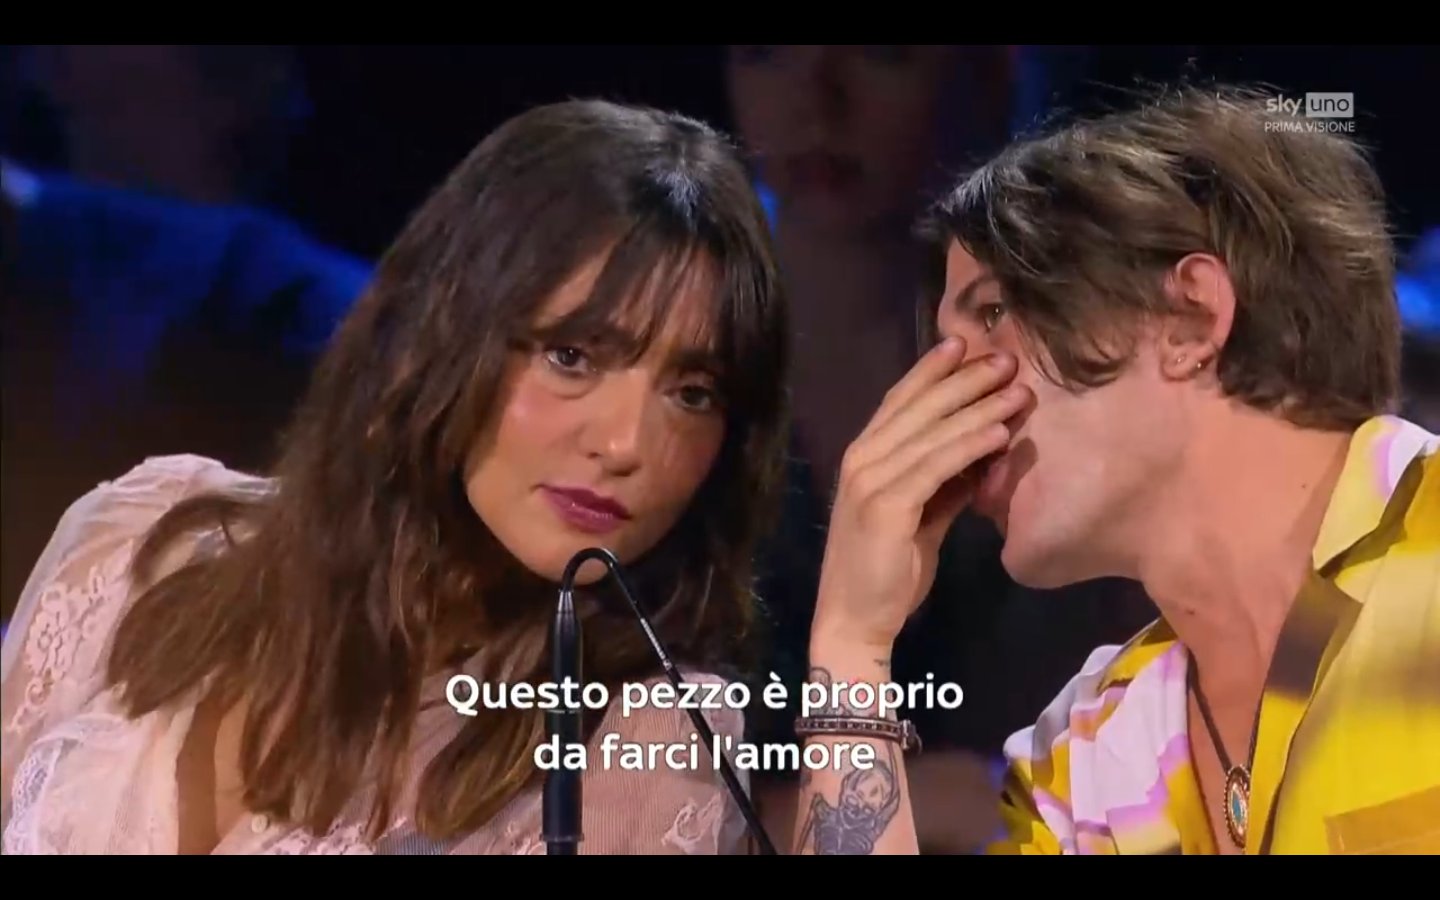 X-Factor 16, quarta puntata. Continua anche sulla free la nuova edizione del talent show condotto da Francesca Michielin, in onda su Tv8